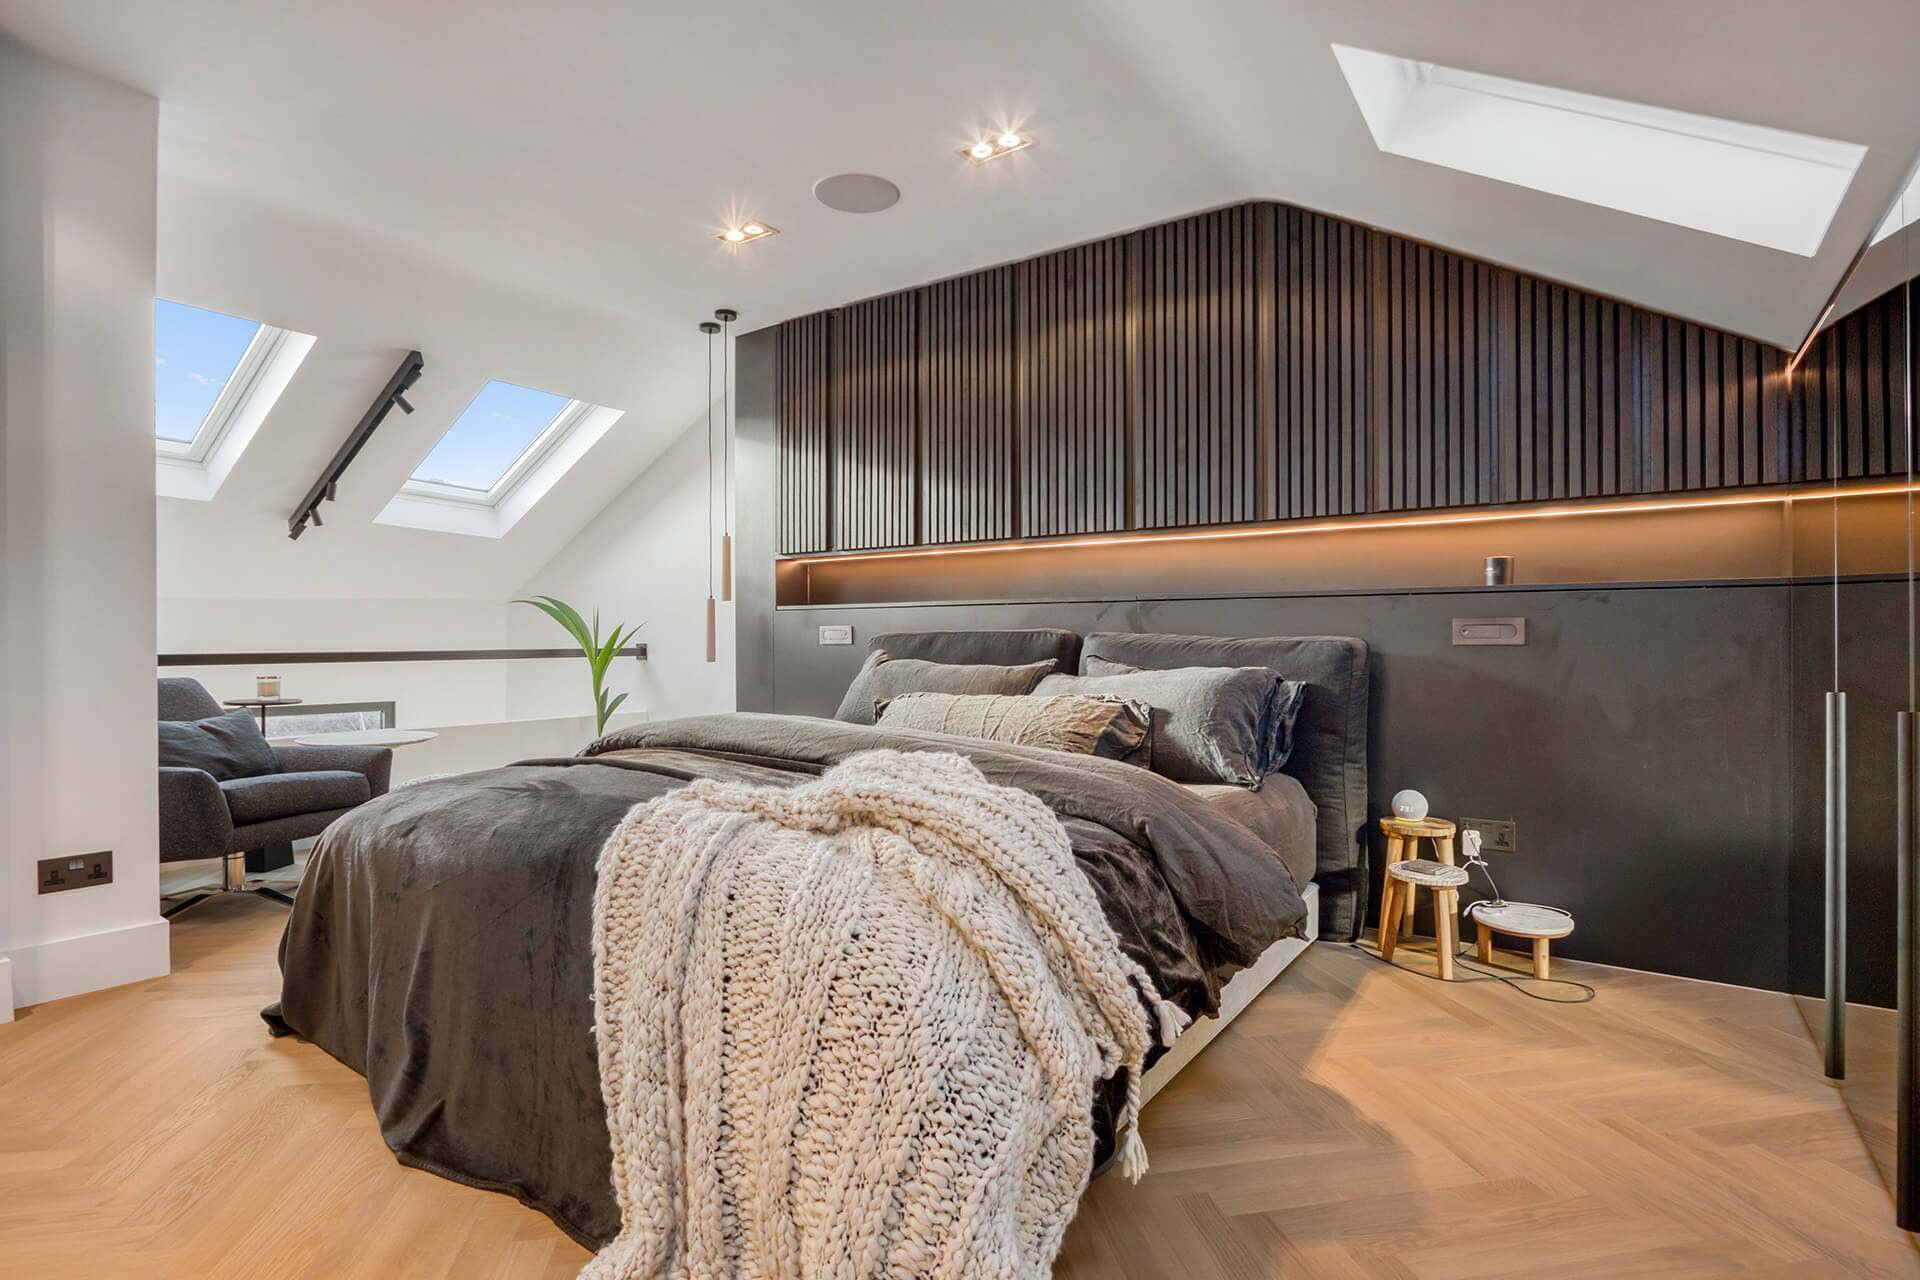 loft bedroom with velux window